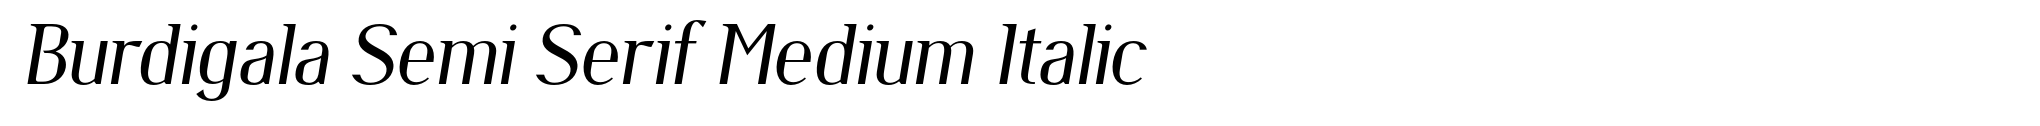 Burdigala Semi Serif Medium Italic image